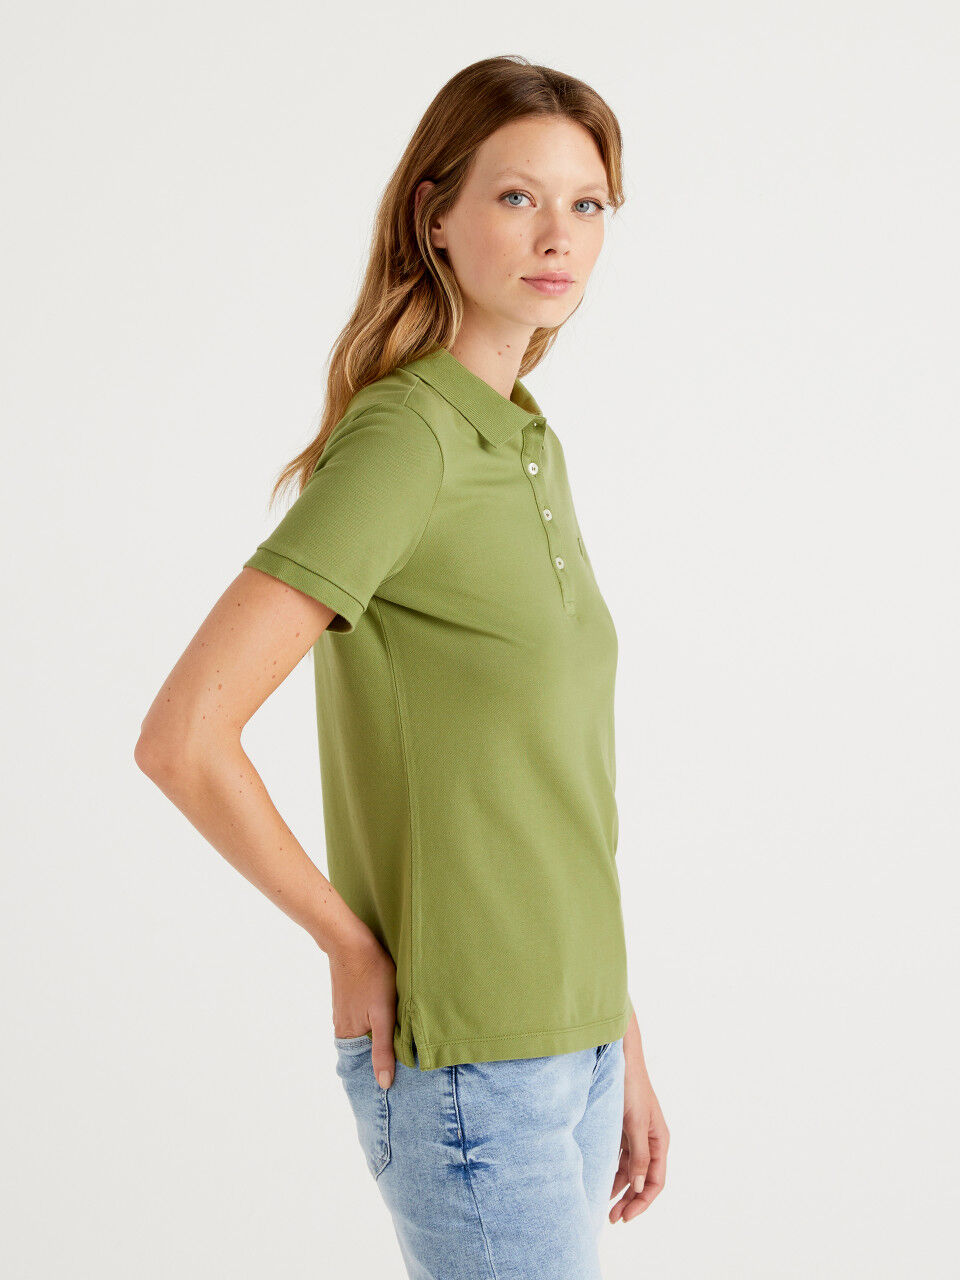 sconto 67% Verde S MODA DONNA Camicie & T-shirt Polo Basic Benetton Polo 